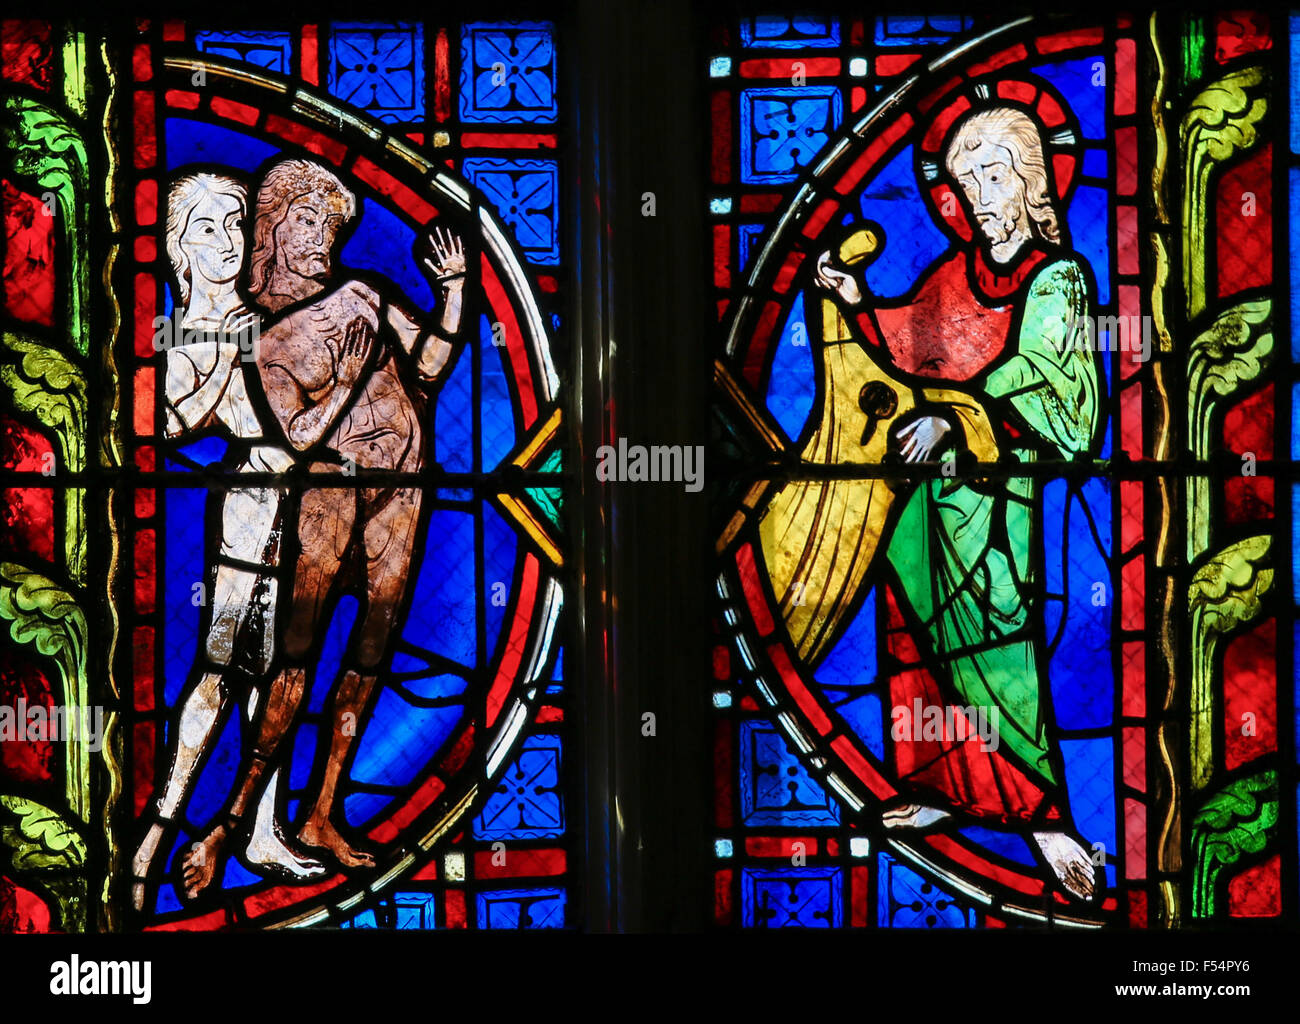 Glasmalerei-Fenster Darstellung von Adam und Eva in der Kathedrale von Tours, Frankreich. Stockfoto